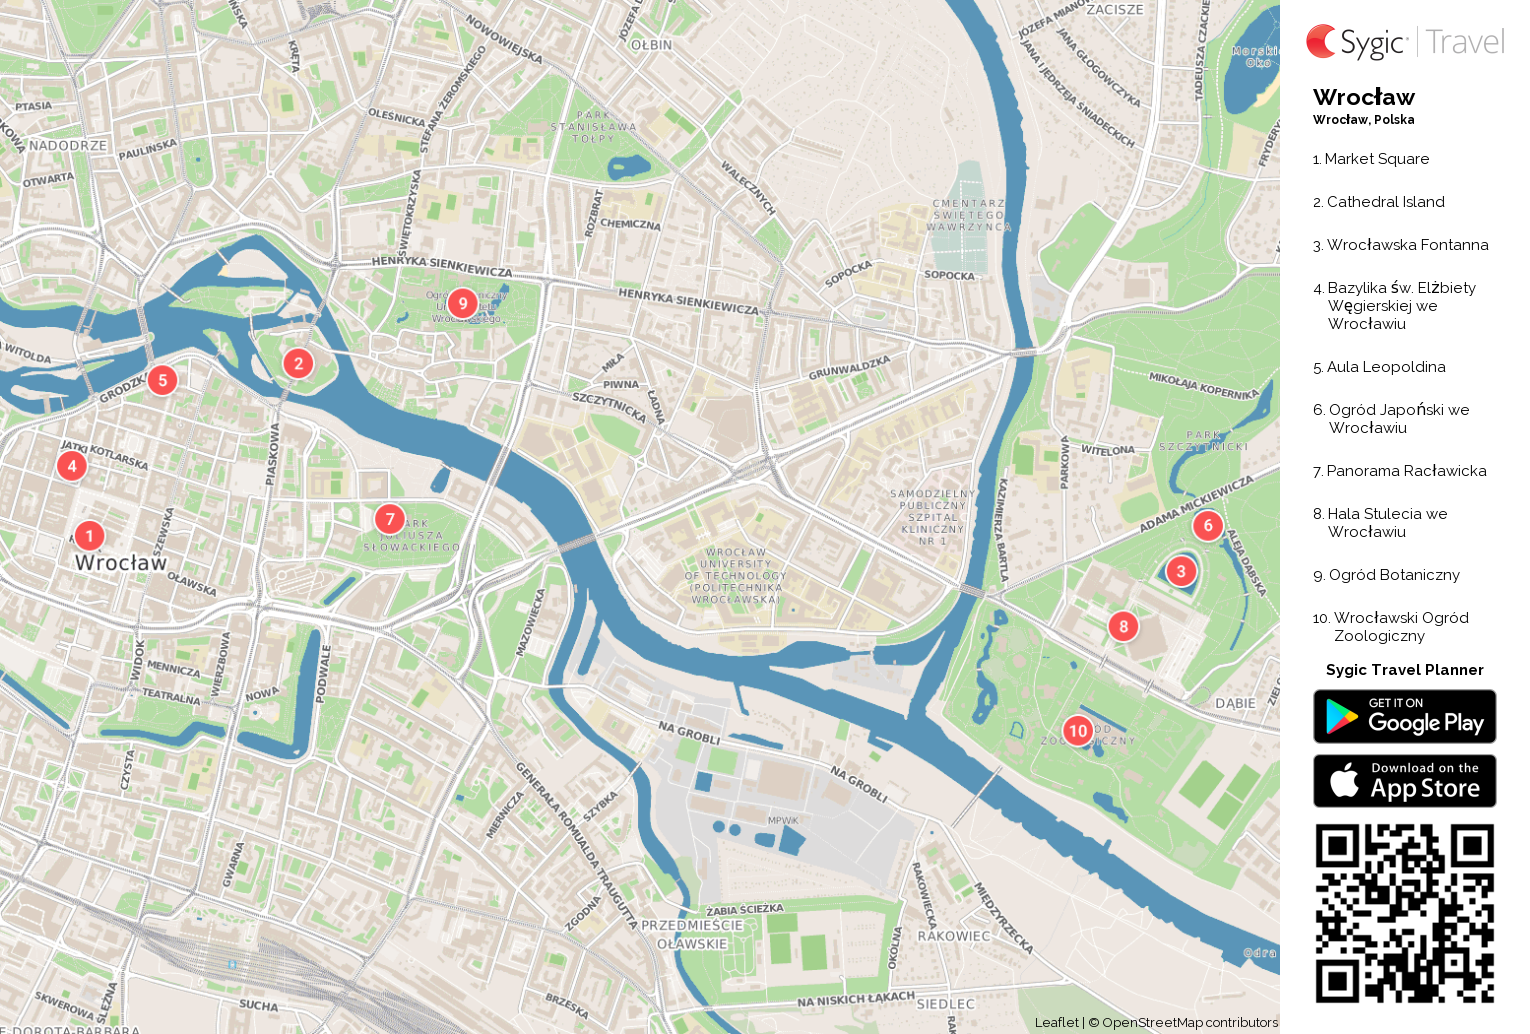 wroclaw mapa Wrocław – Mapa turystyczna do druku | Sygic Travel wroclaw mapa